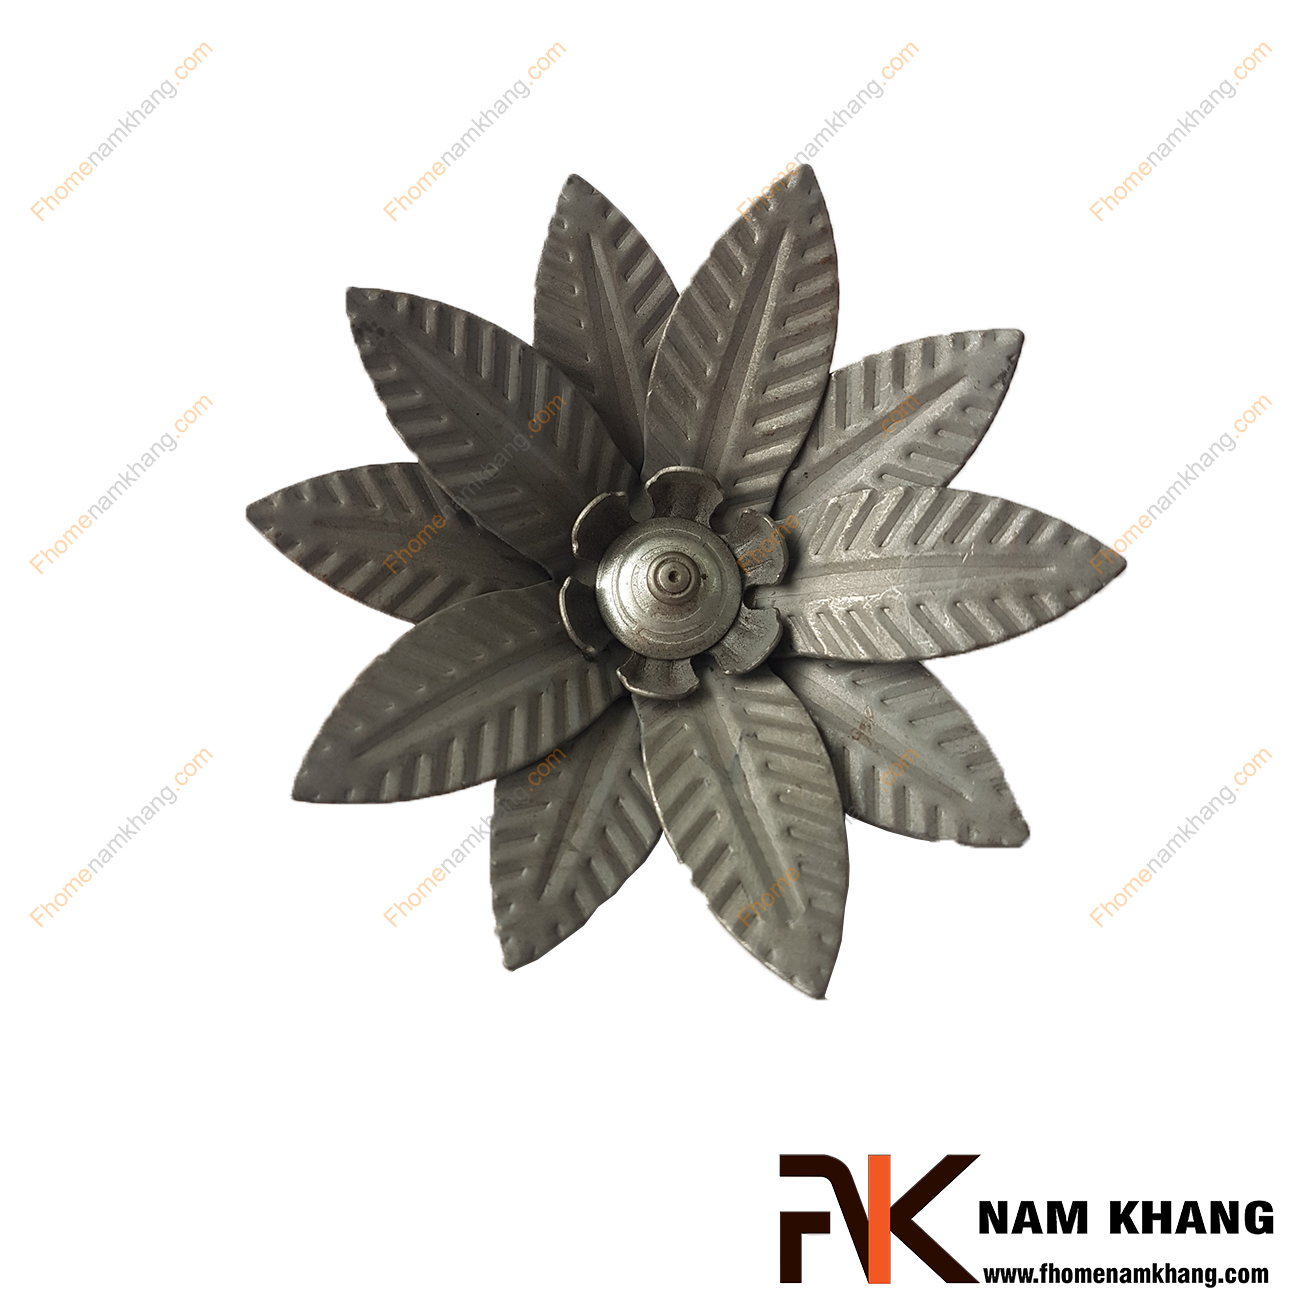 Hoa lá thép dập NKS-104 là phụ kiện hoa lá dập, sử dụng để trang trí cho các sản phẩm từ sắt uốn mỹ thuật  Chi tiết được dập nỗi trên bề mặt, mô phỏng chính xác chi tiết thực tế.